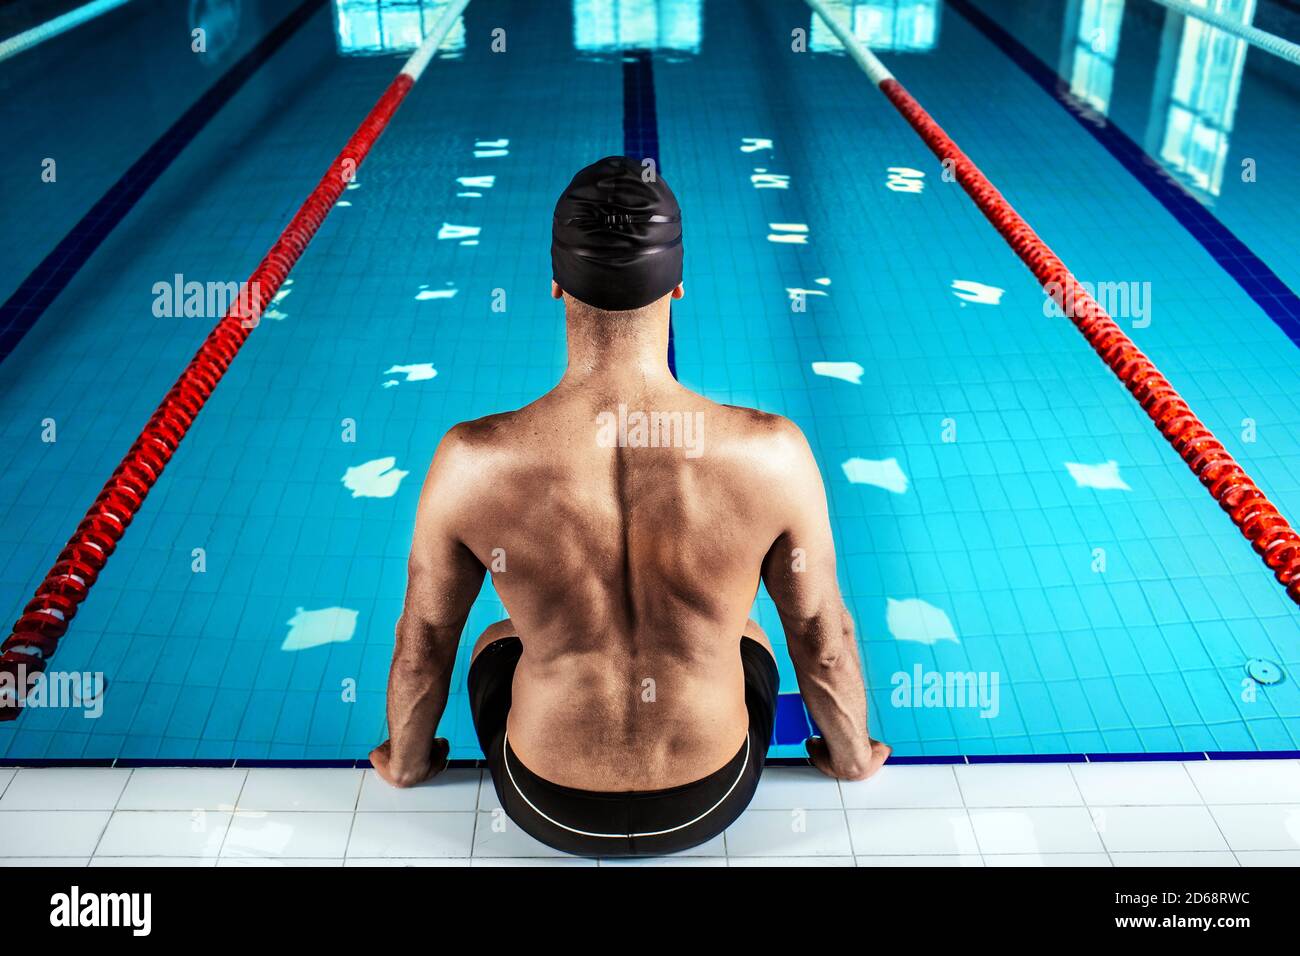 Schwimmer sitzt am Pool, Blick nach hinten. Profi-Schwimmer in der Nähe des Schwimmbades, harter Kontrast Stockfoto